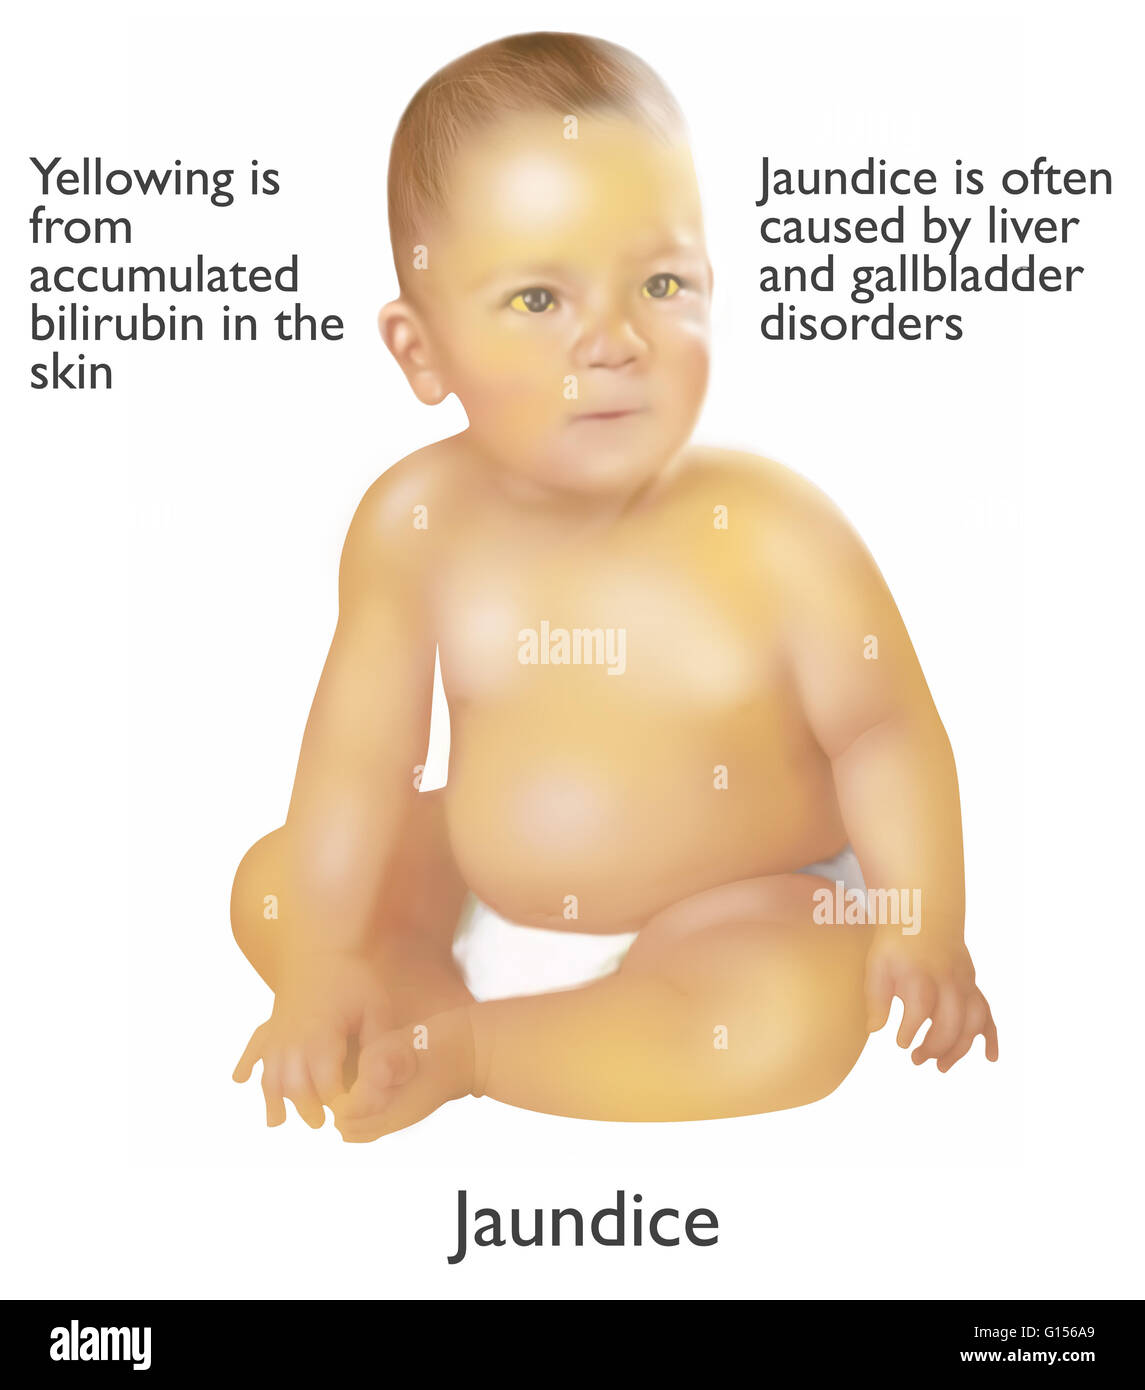 Abbildung eines Säuglings mit Gelbsucht. Gelbsucht wird oft durch Leber und Gallenblase Erkrankungen verursacht. Die gelbe Farbe stammt aus angesammelten Bilirubin in der Haut. Stockfoto